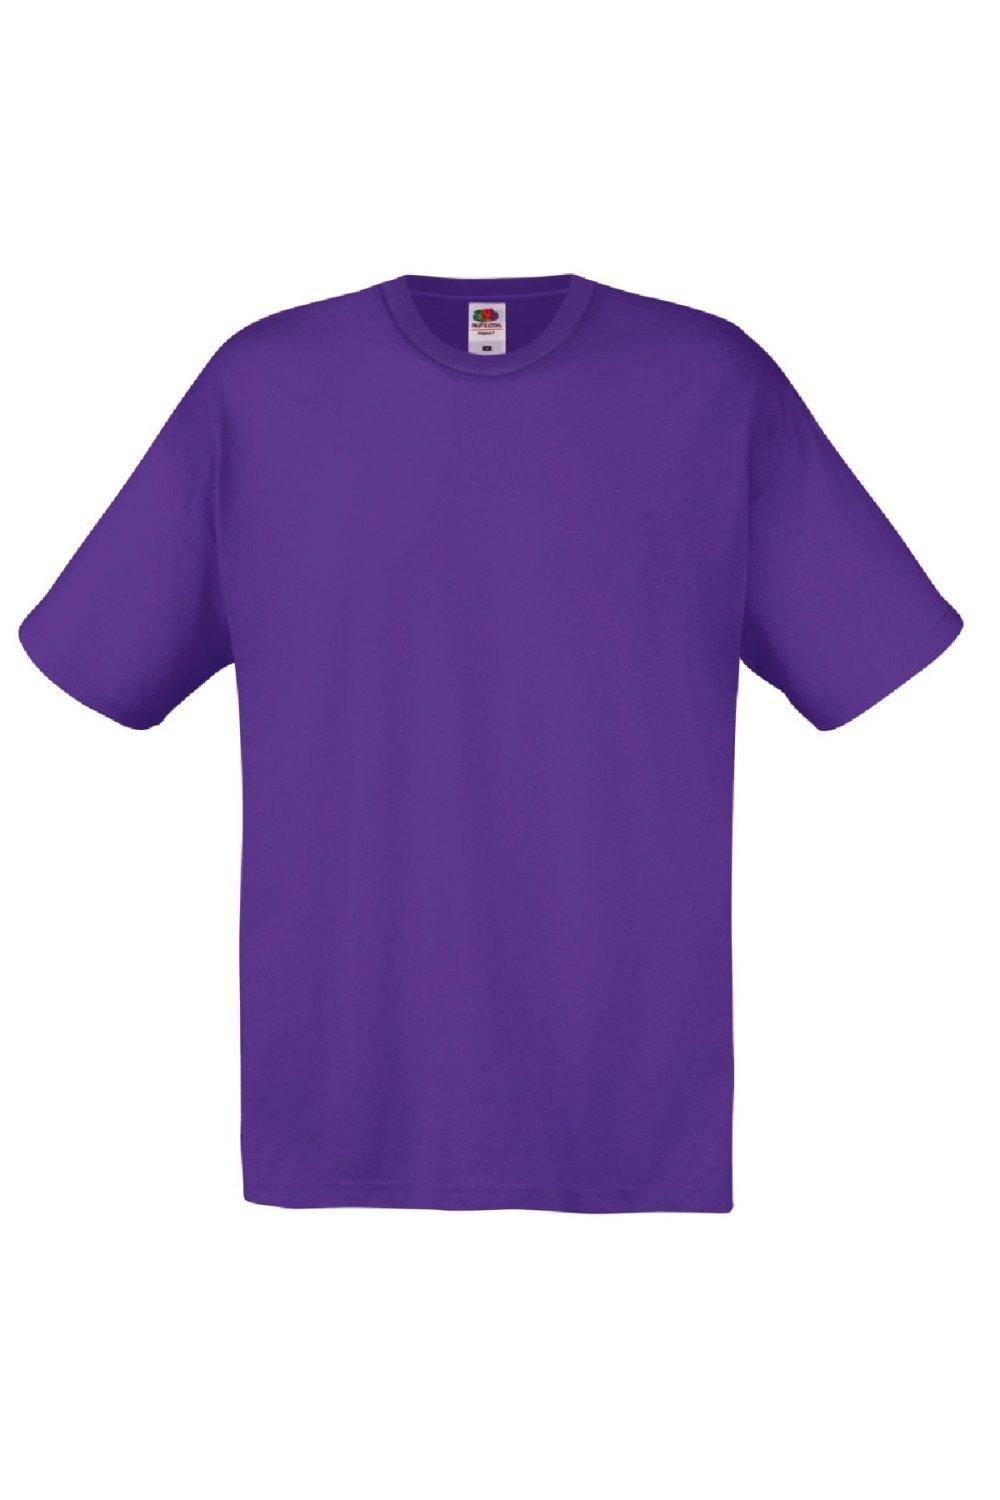 Оригинальная полноразмерная футболка Screen Stars с короткими рукавами Fruit of the Loom, фиолетовый